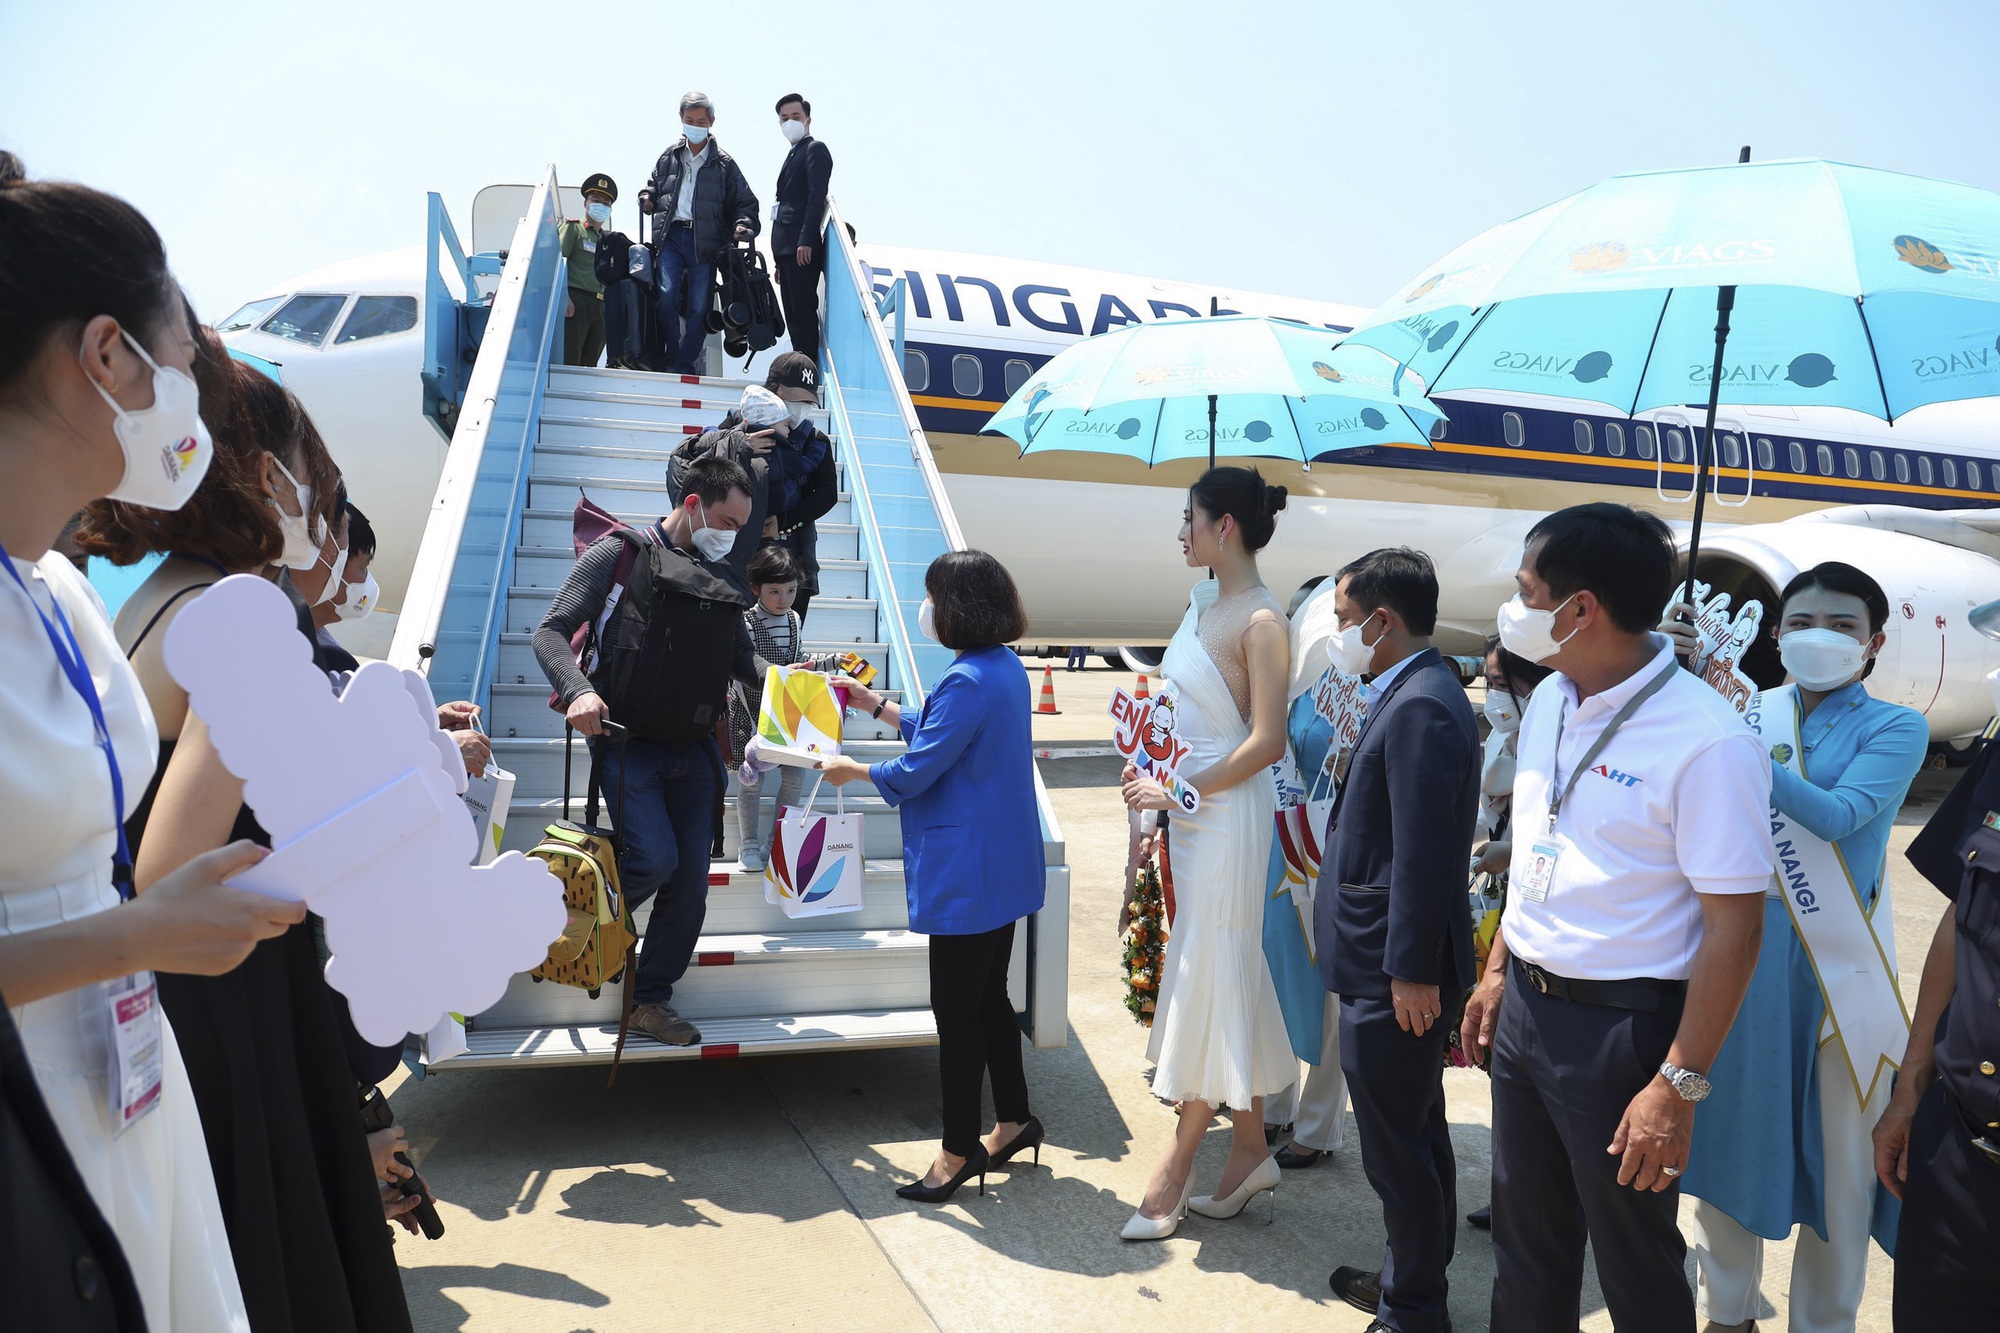 Du lịch Đà Nẵng kỳ vọng tăng trưởng mạnh mẽ sau Diễn đàn phát triển đường bay châu Á 2022 - Ảnh 3.